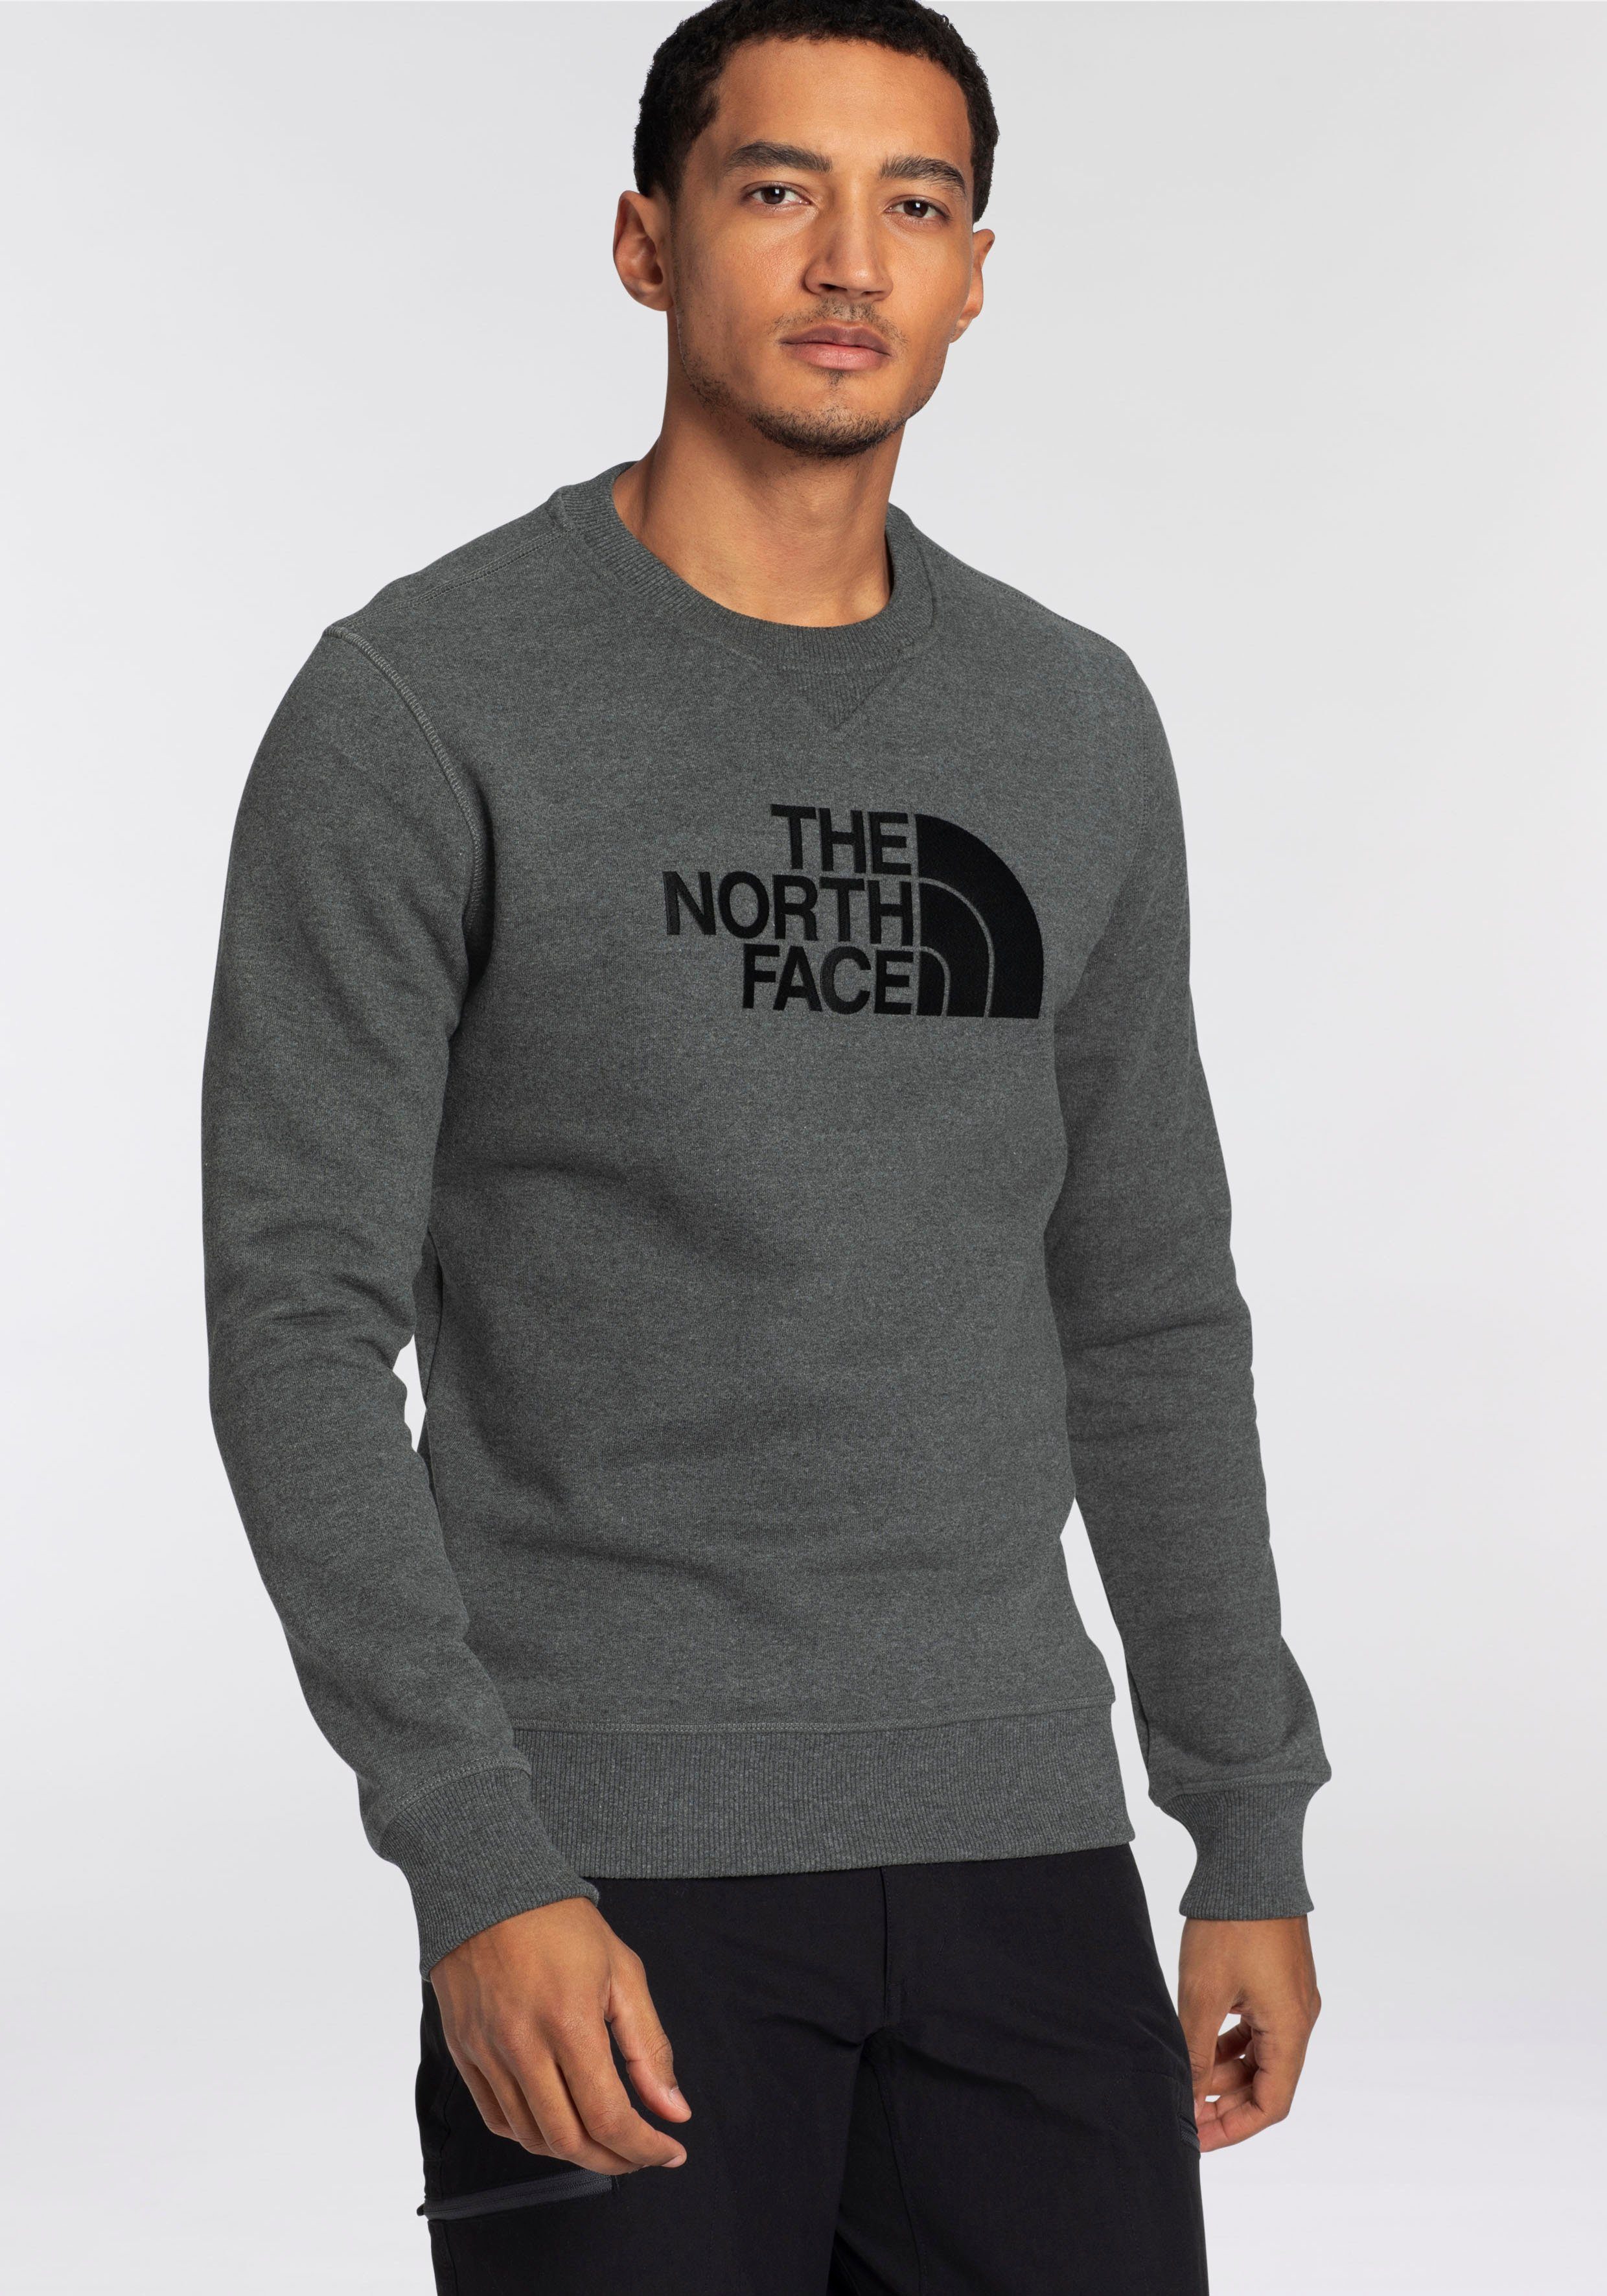 The North Face Sweatshirt DREW PEAK, Sweatshirt von The North Face